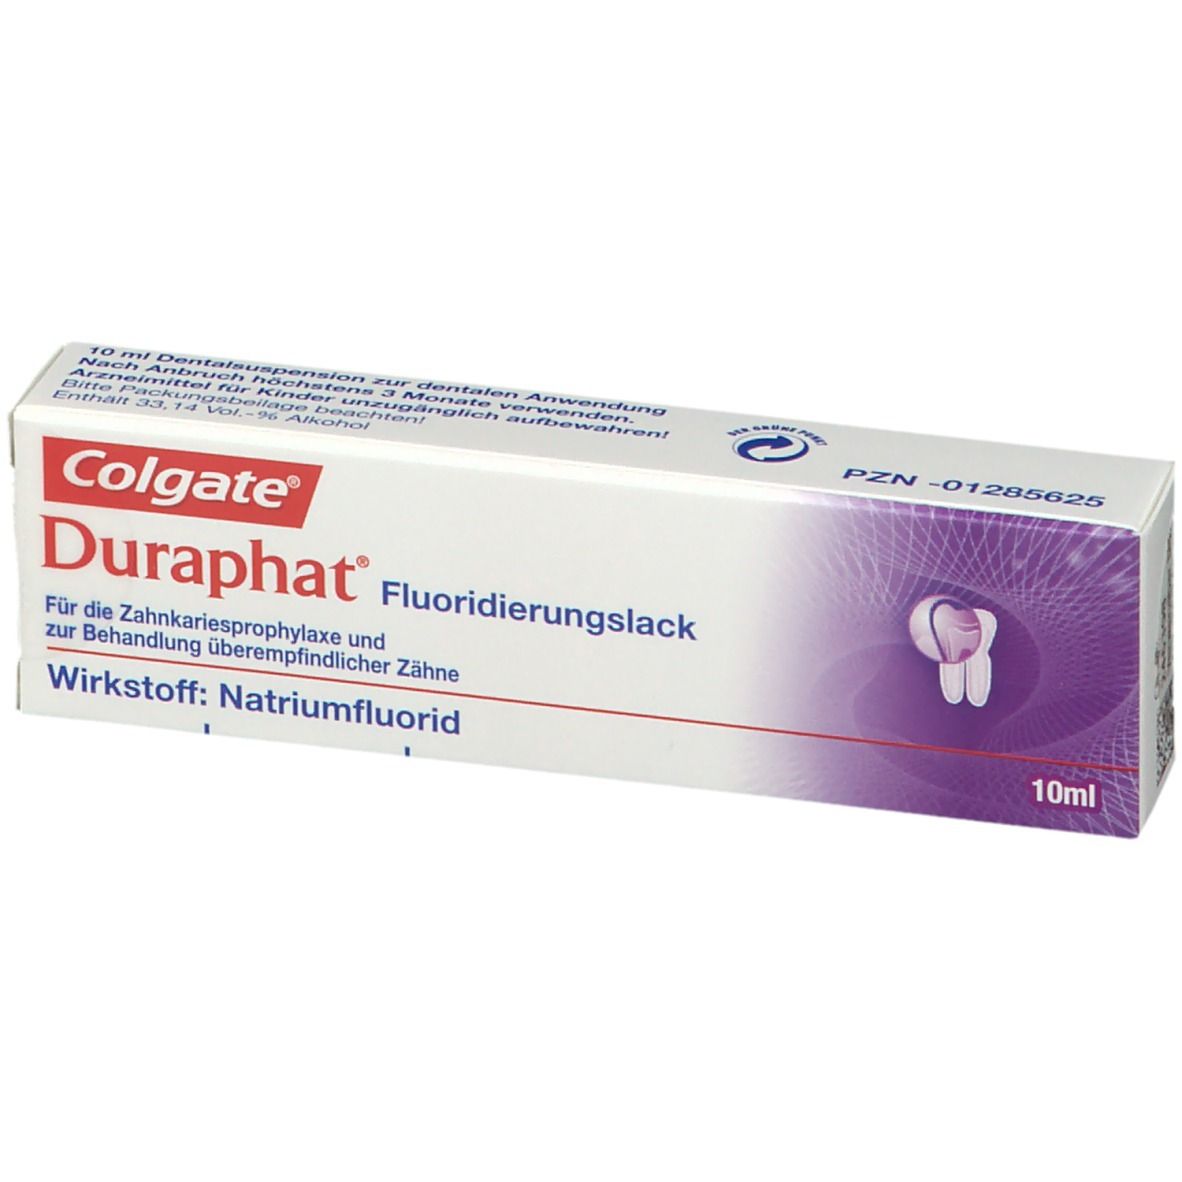 Colgate Duraphat Fluoridierungslack